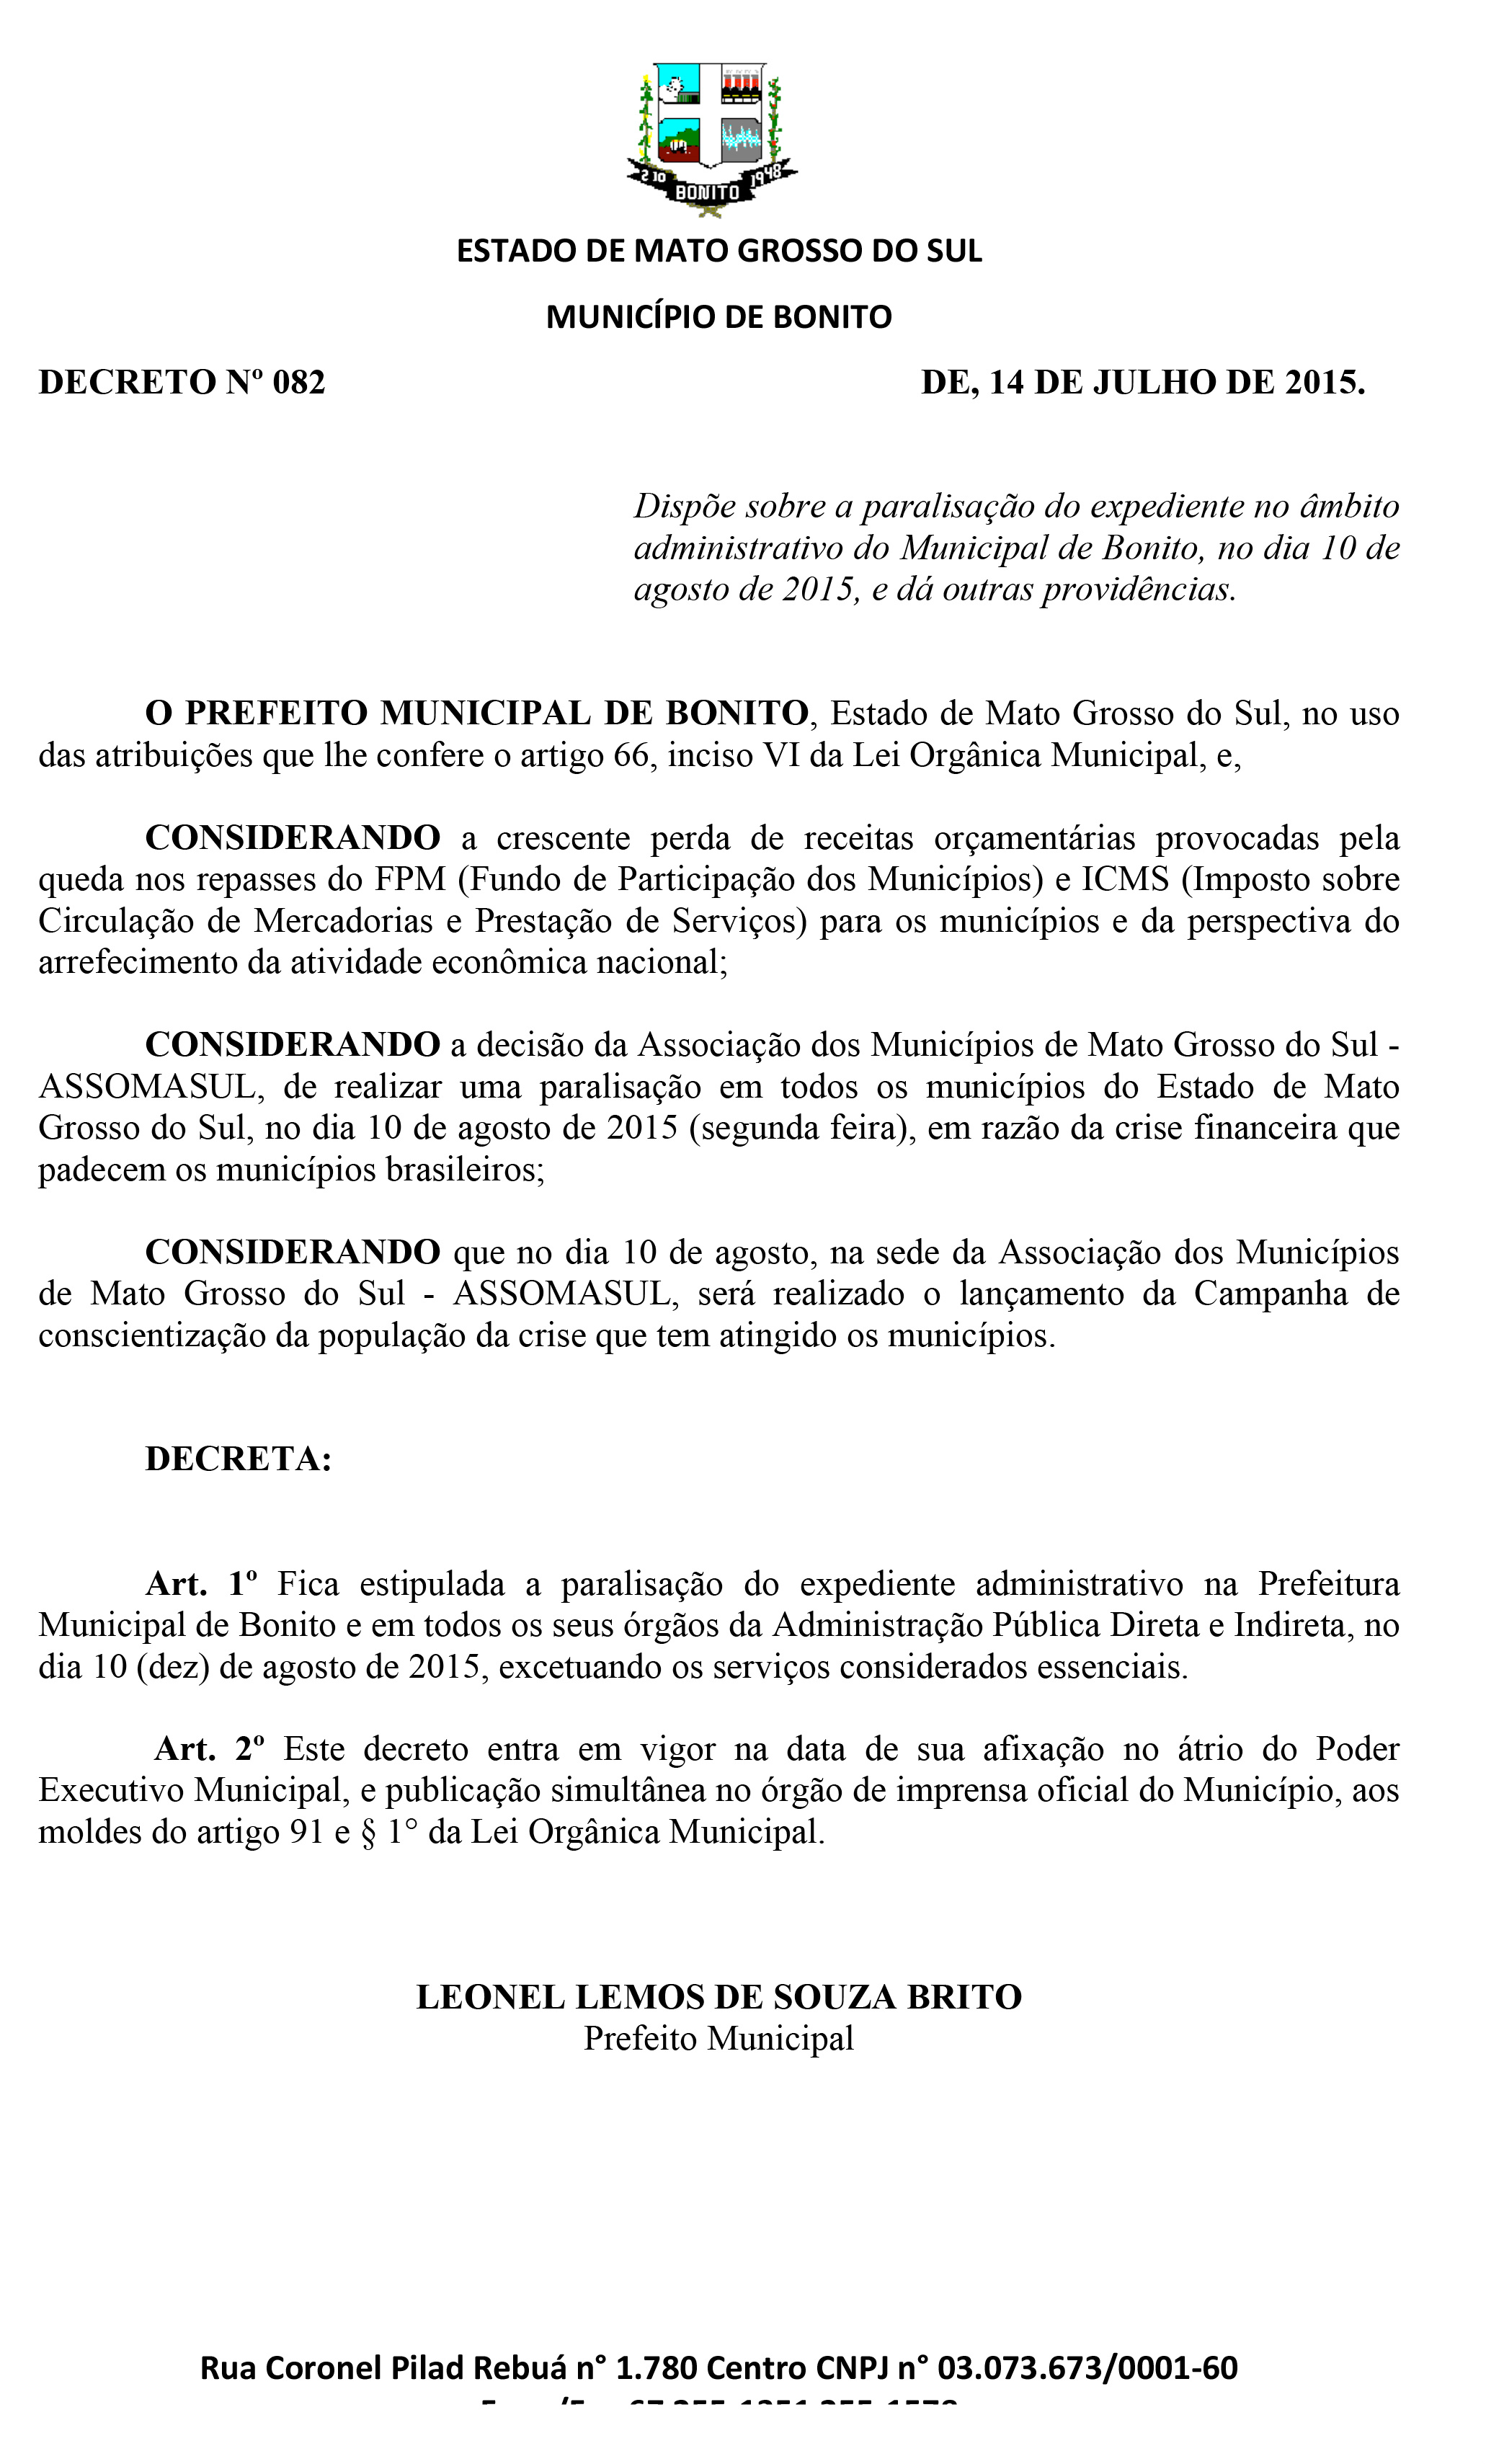 Prefeituras Municipal Publica Decreto de Paralização